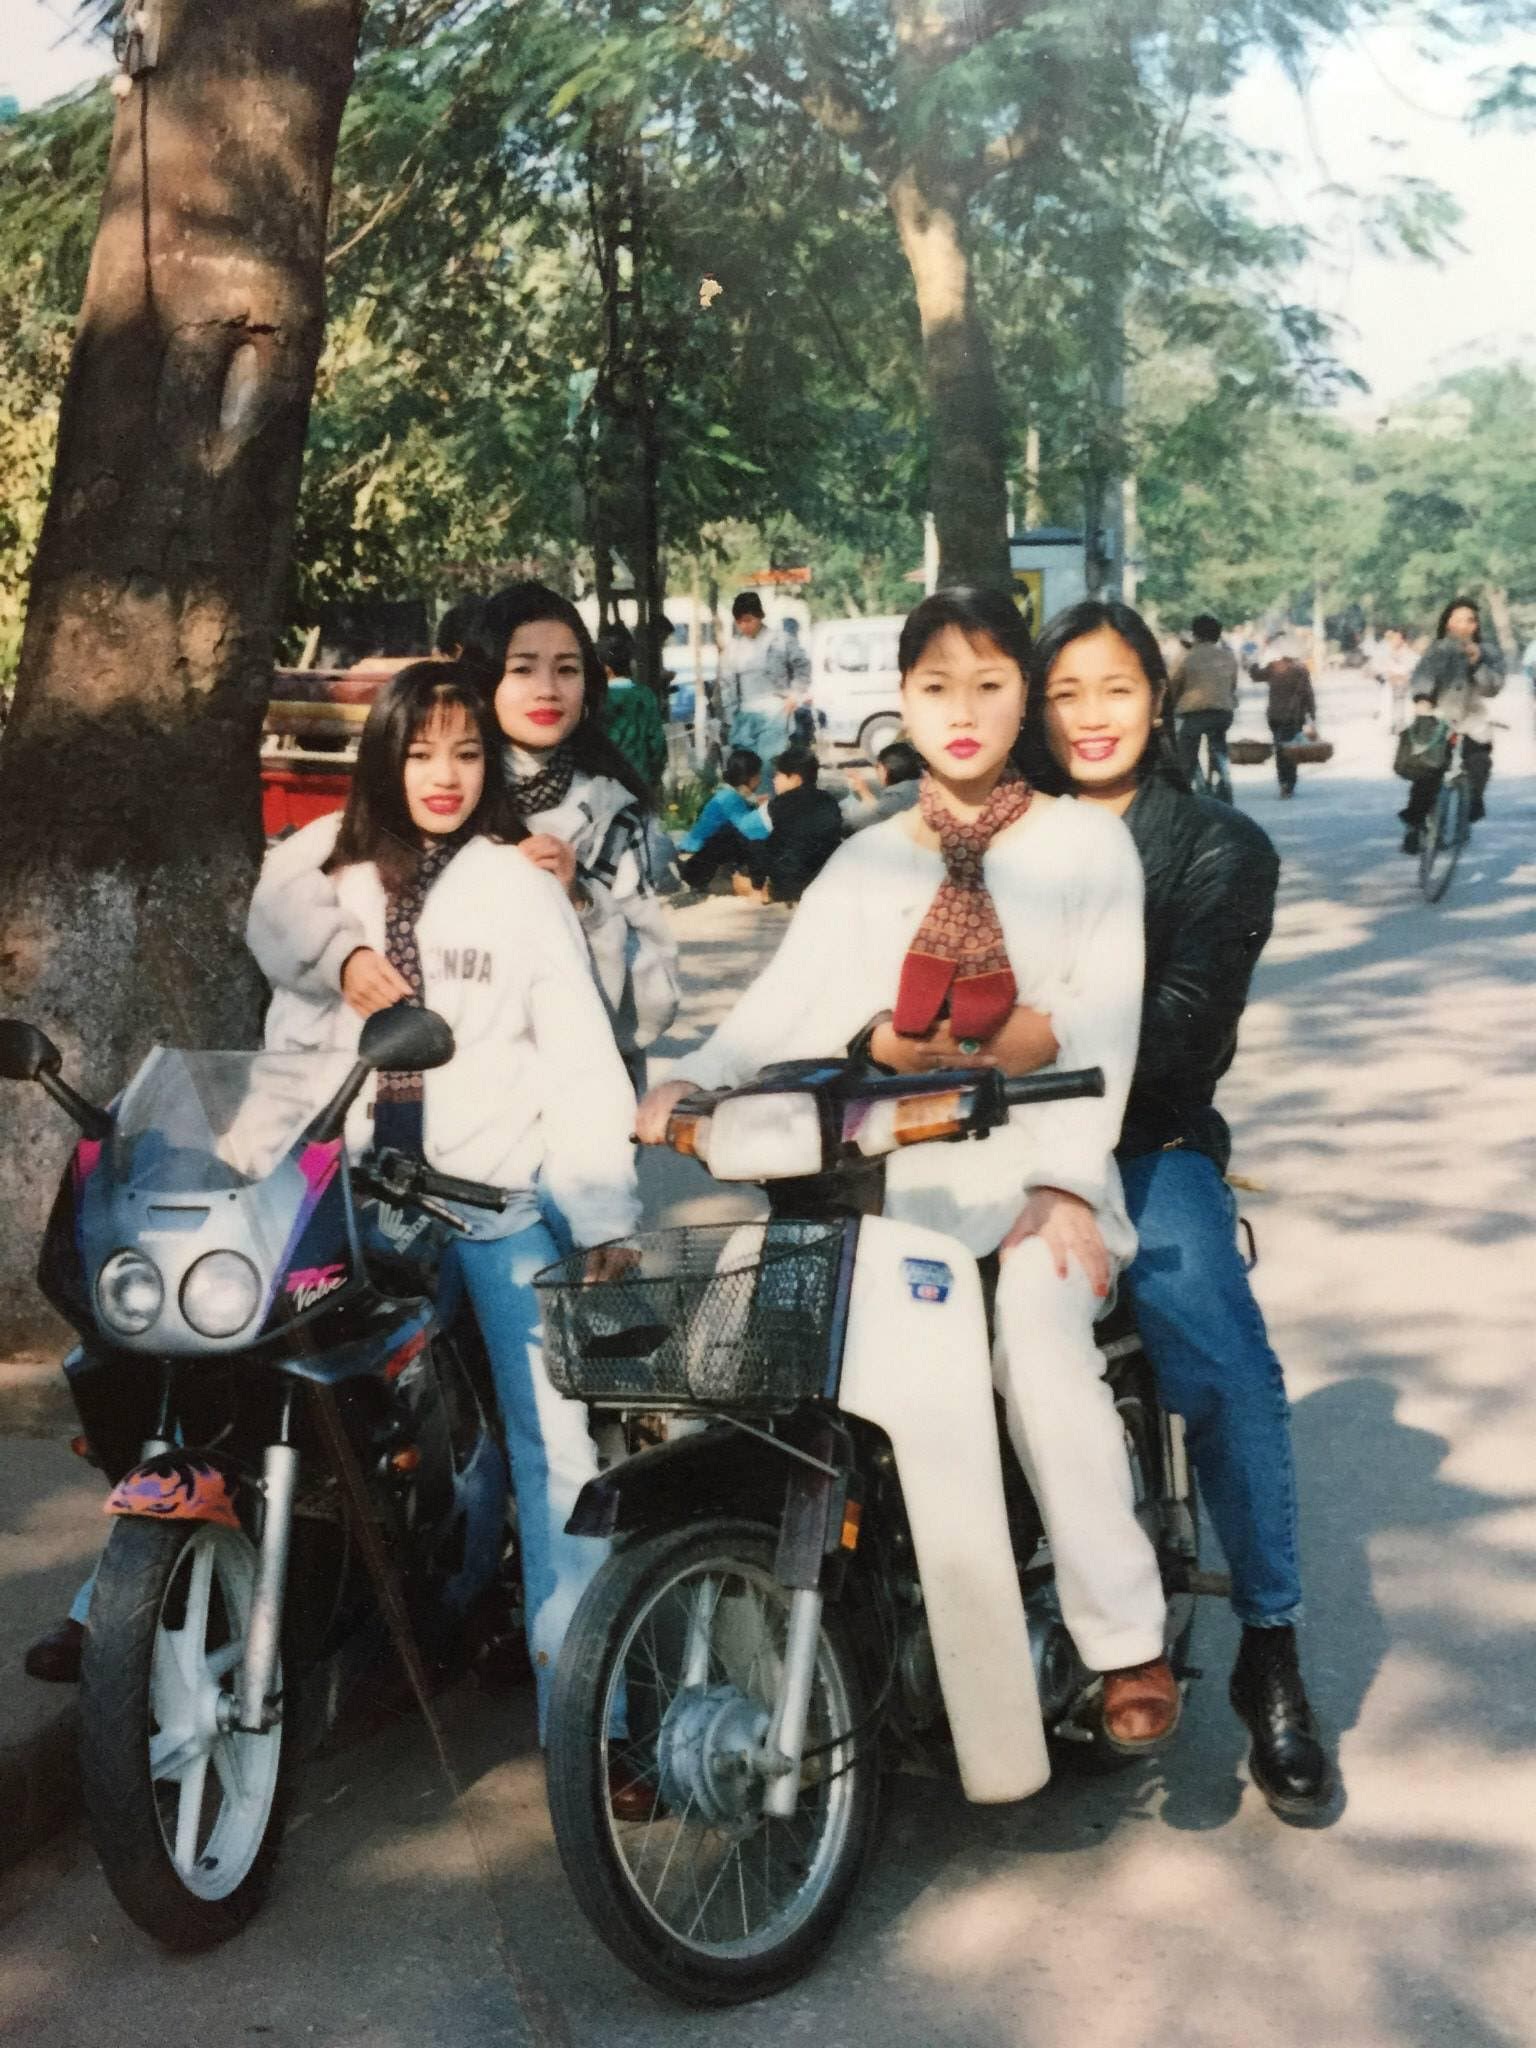 Giới nhà giàu Hà Nội thập niên 90: Dùng máy nhắn tin, đi xe phân khối lớn - 9